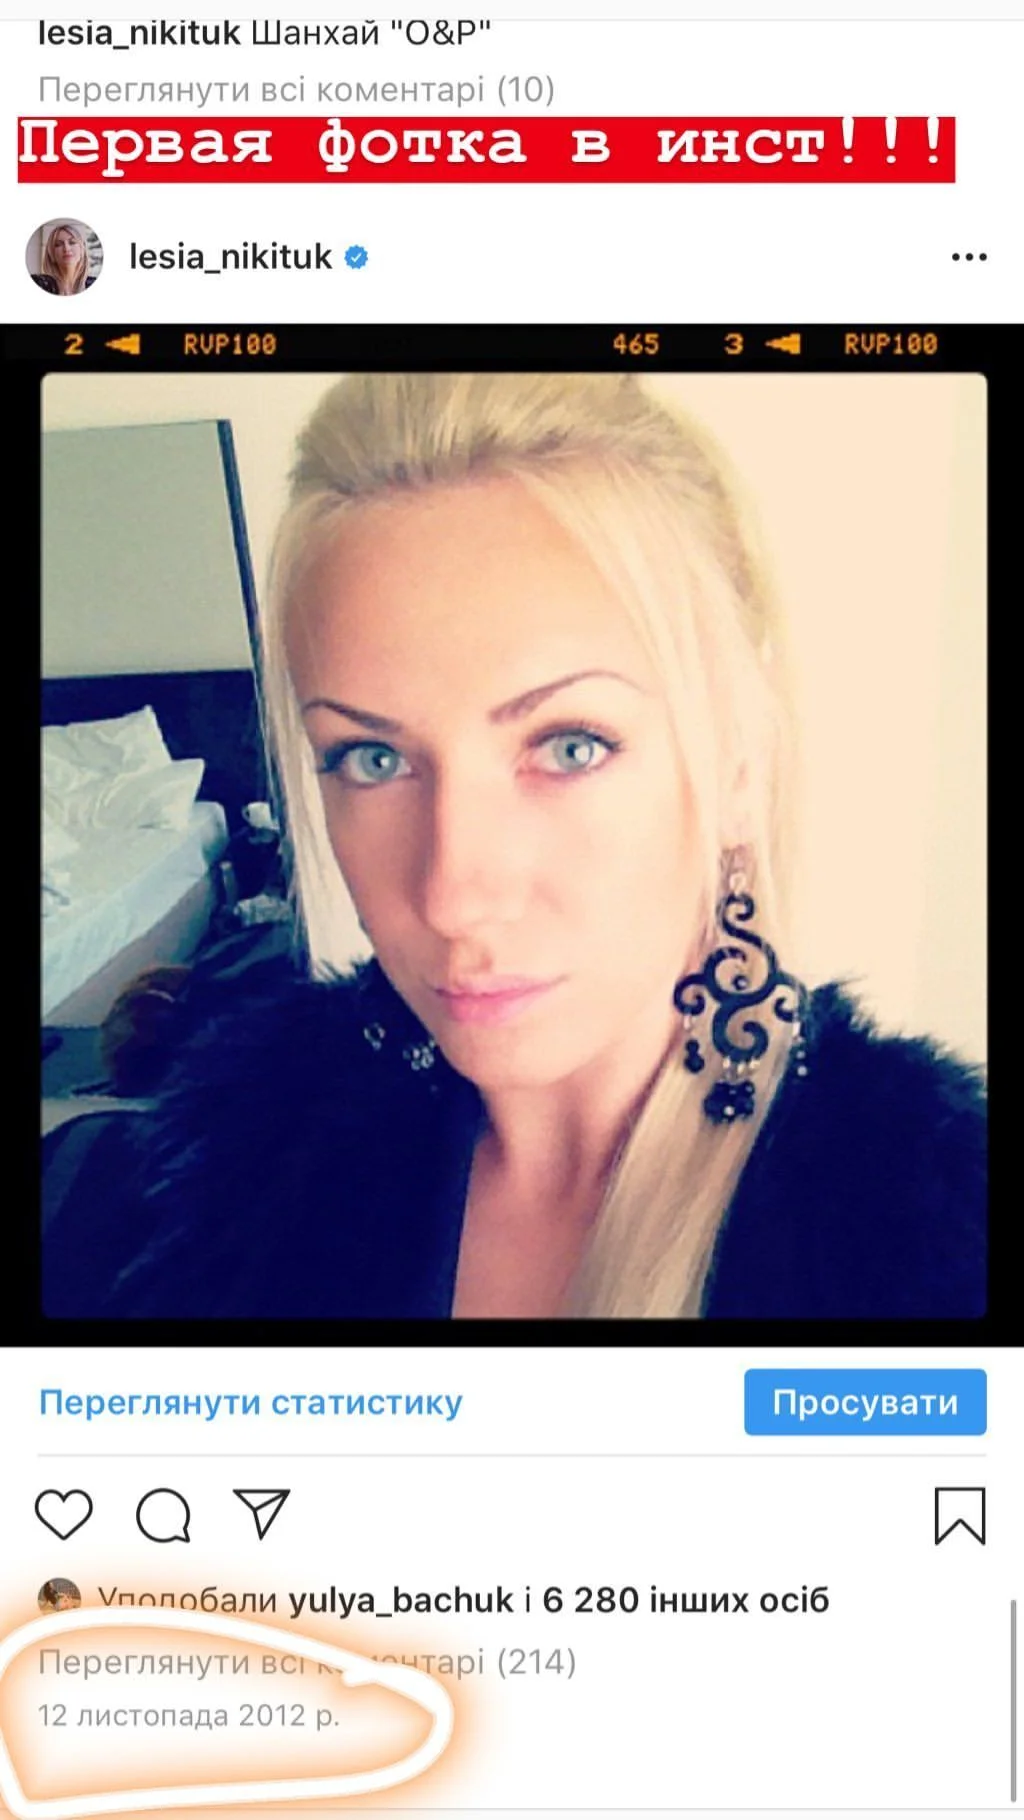 Леся Нікітюк показала своє перше фото в Instagram, і зірку там ледь упізнати - фото 442121